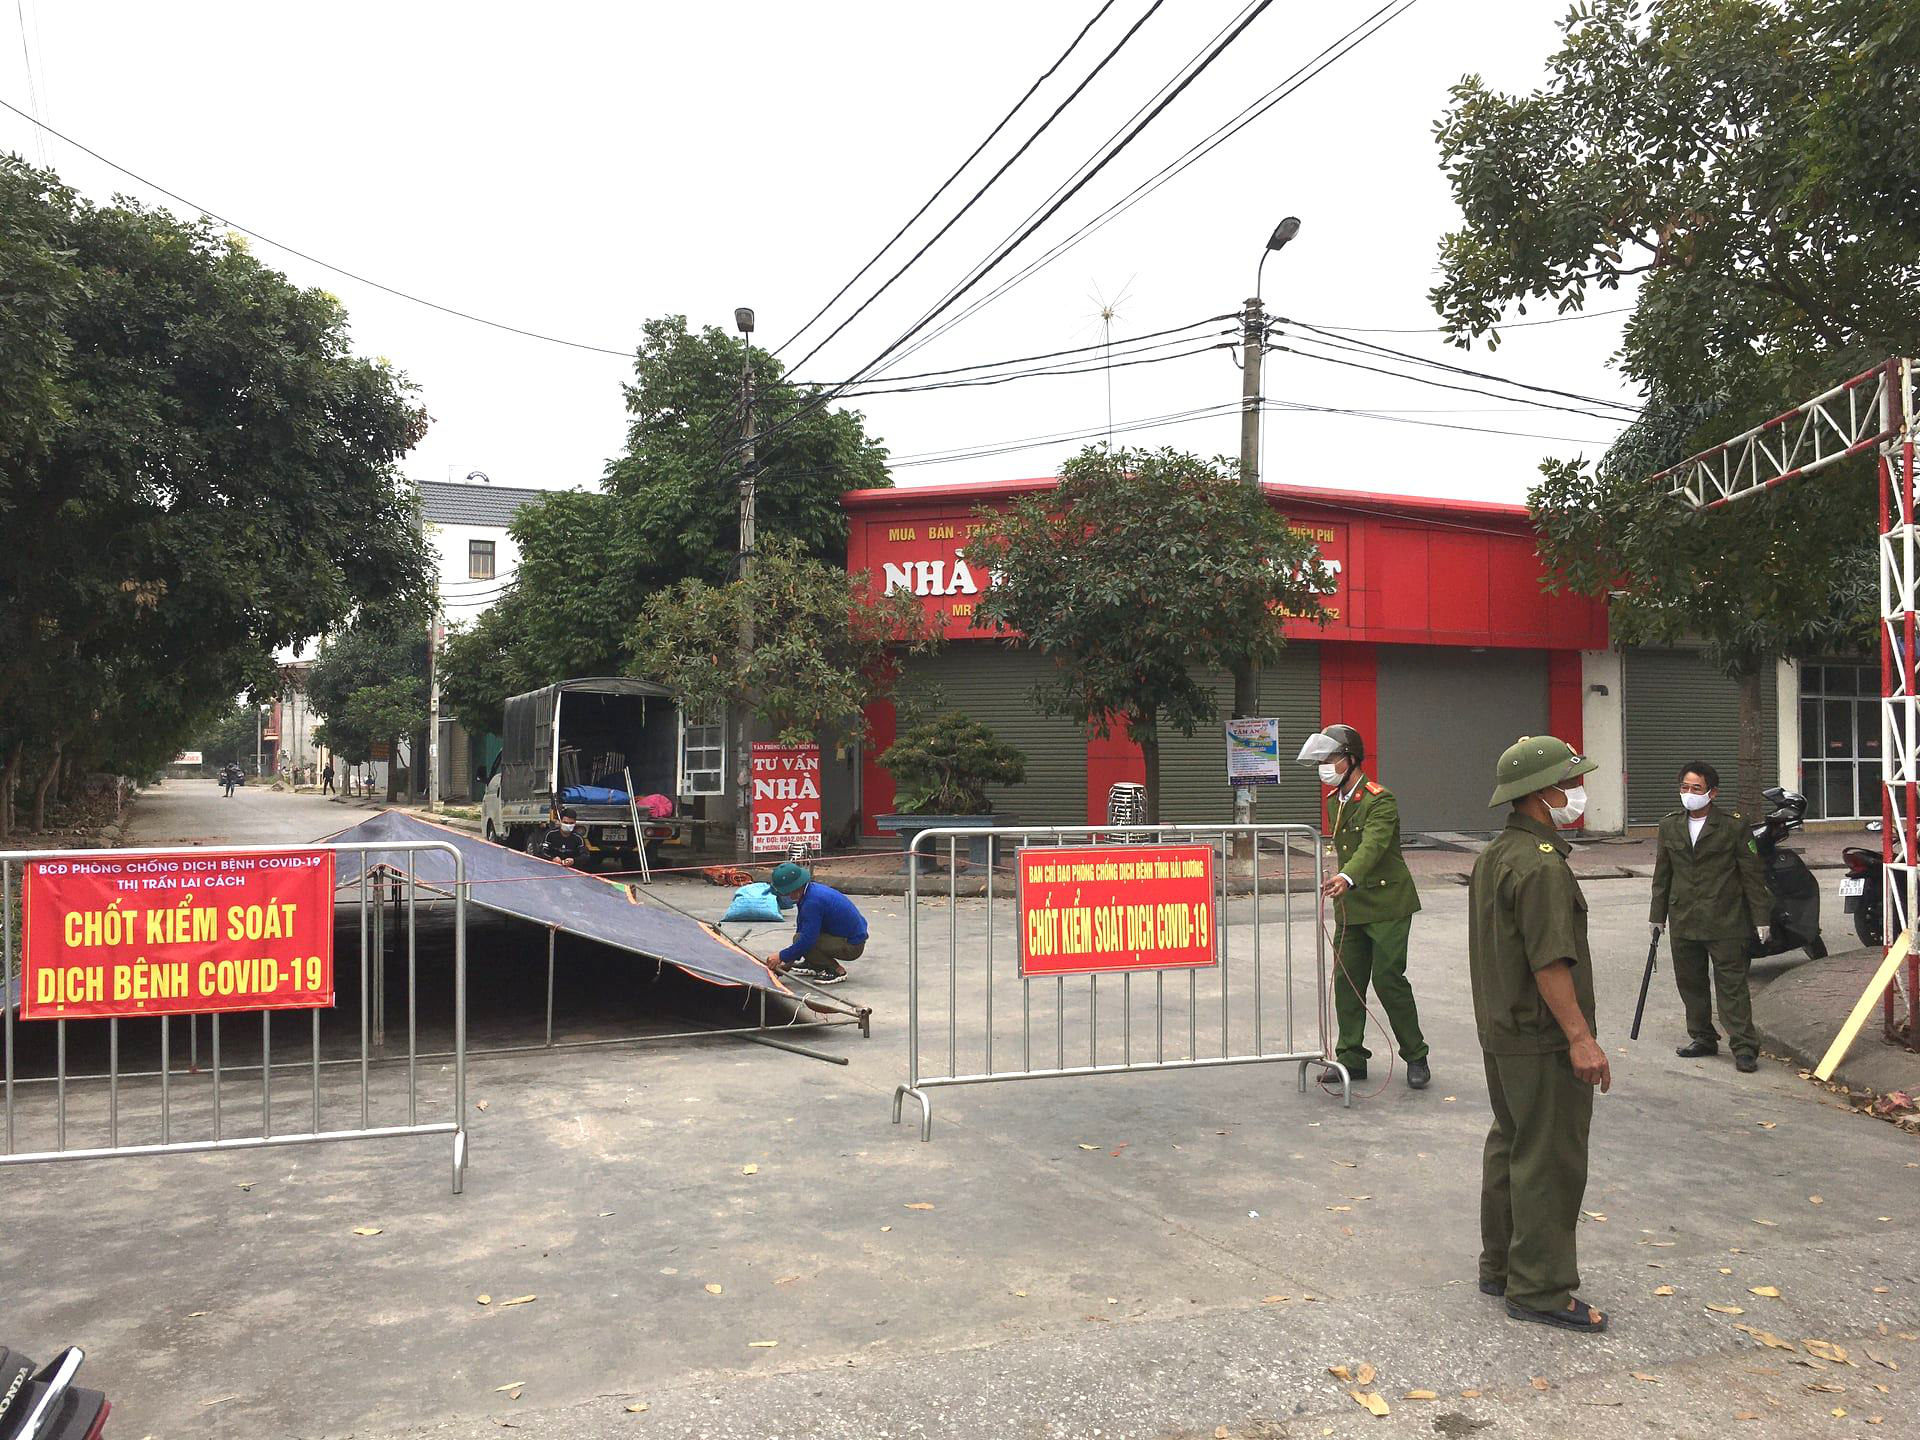 KHẨN: Những ai đến 14 địa điểm sau ở huyện Cẩm Giàng, BV Nội tiết khẩn trương khai báo y tế - Ảnh 3.